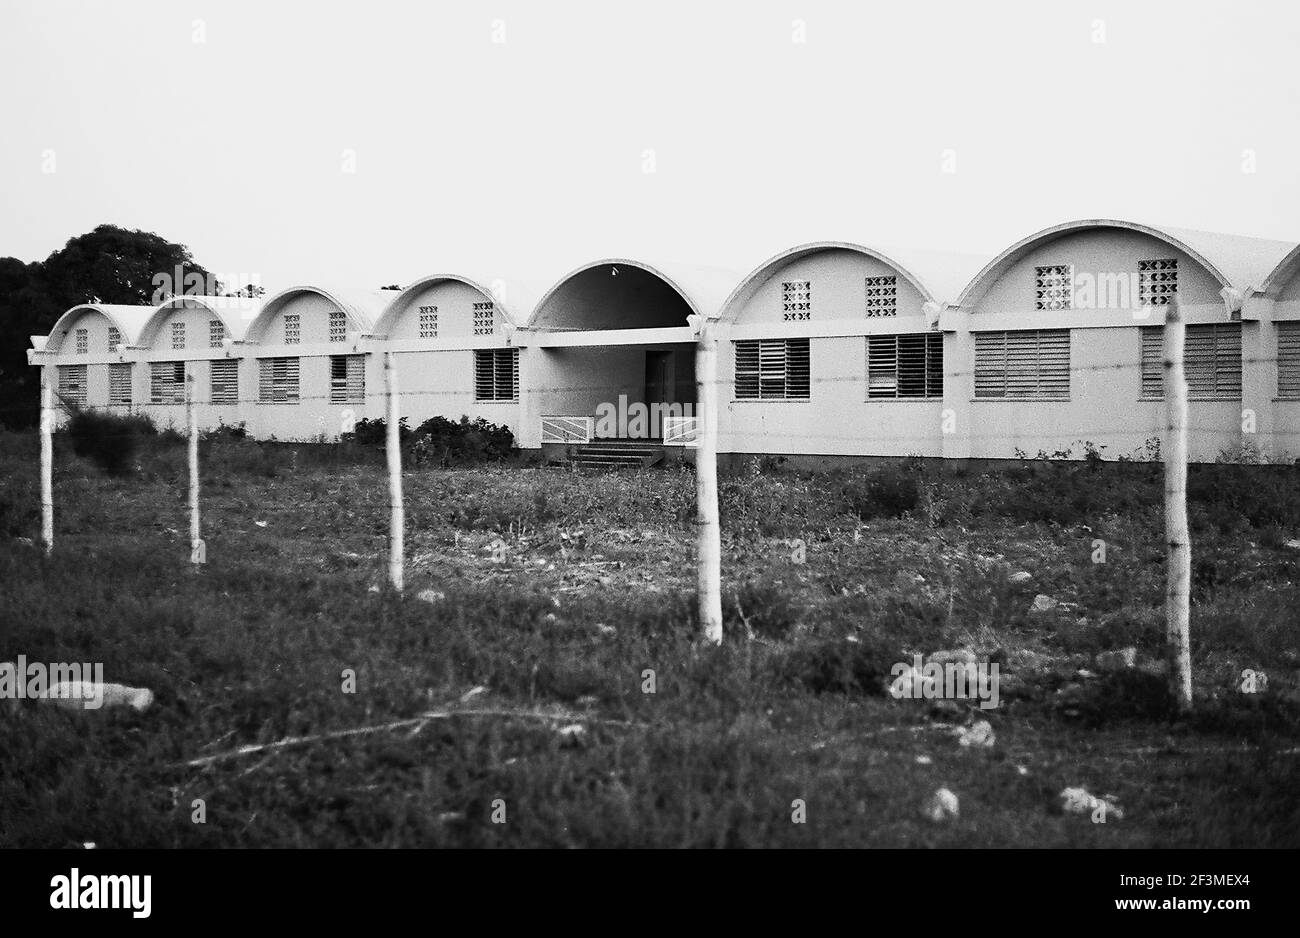 Nouvelle école de la région, Biran, Cuba, Holguin (Cuba : province), Biran (Cuba), 1963. De la collection de photographies Deena Stryker. () Banque D'Images